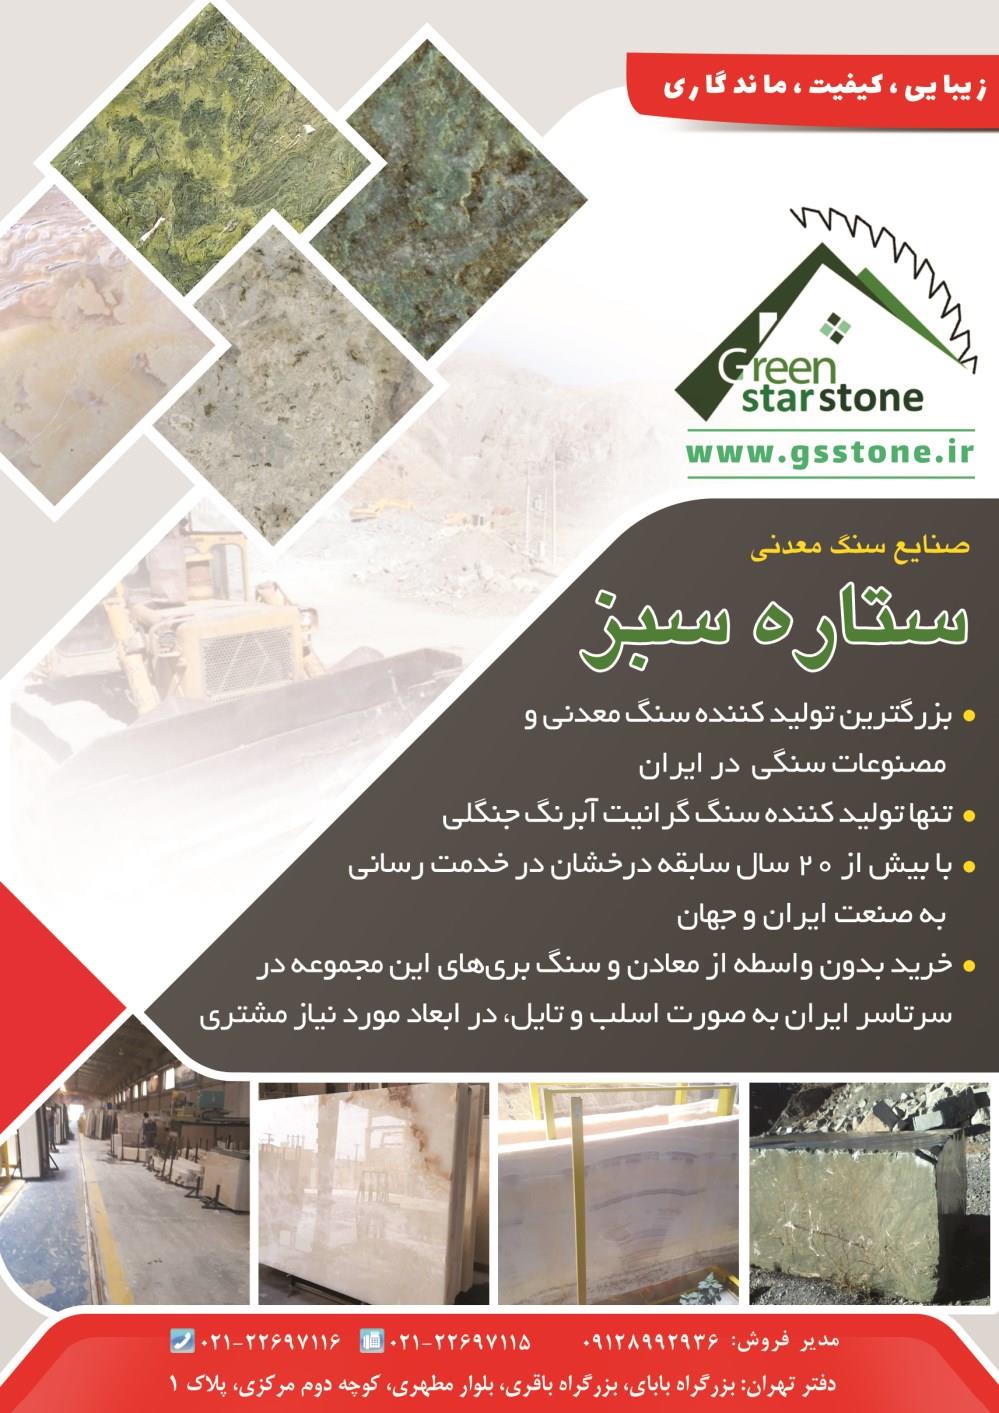 تولید-کننده-سنگ-معدنی-و-مصنوعات-سنگی-در-ایران-آگهی-در-شماره-373